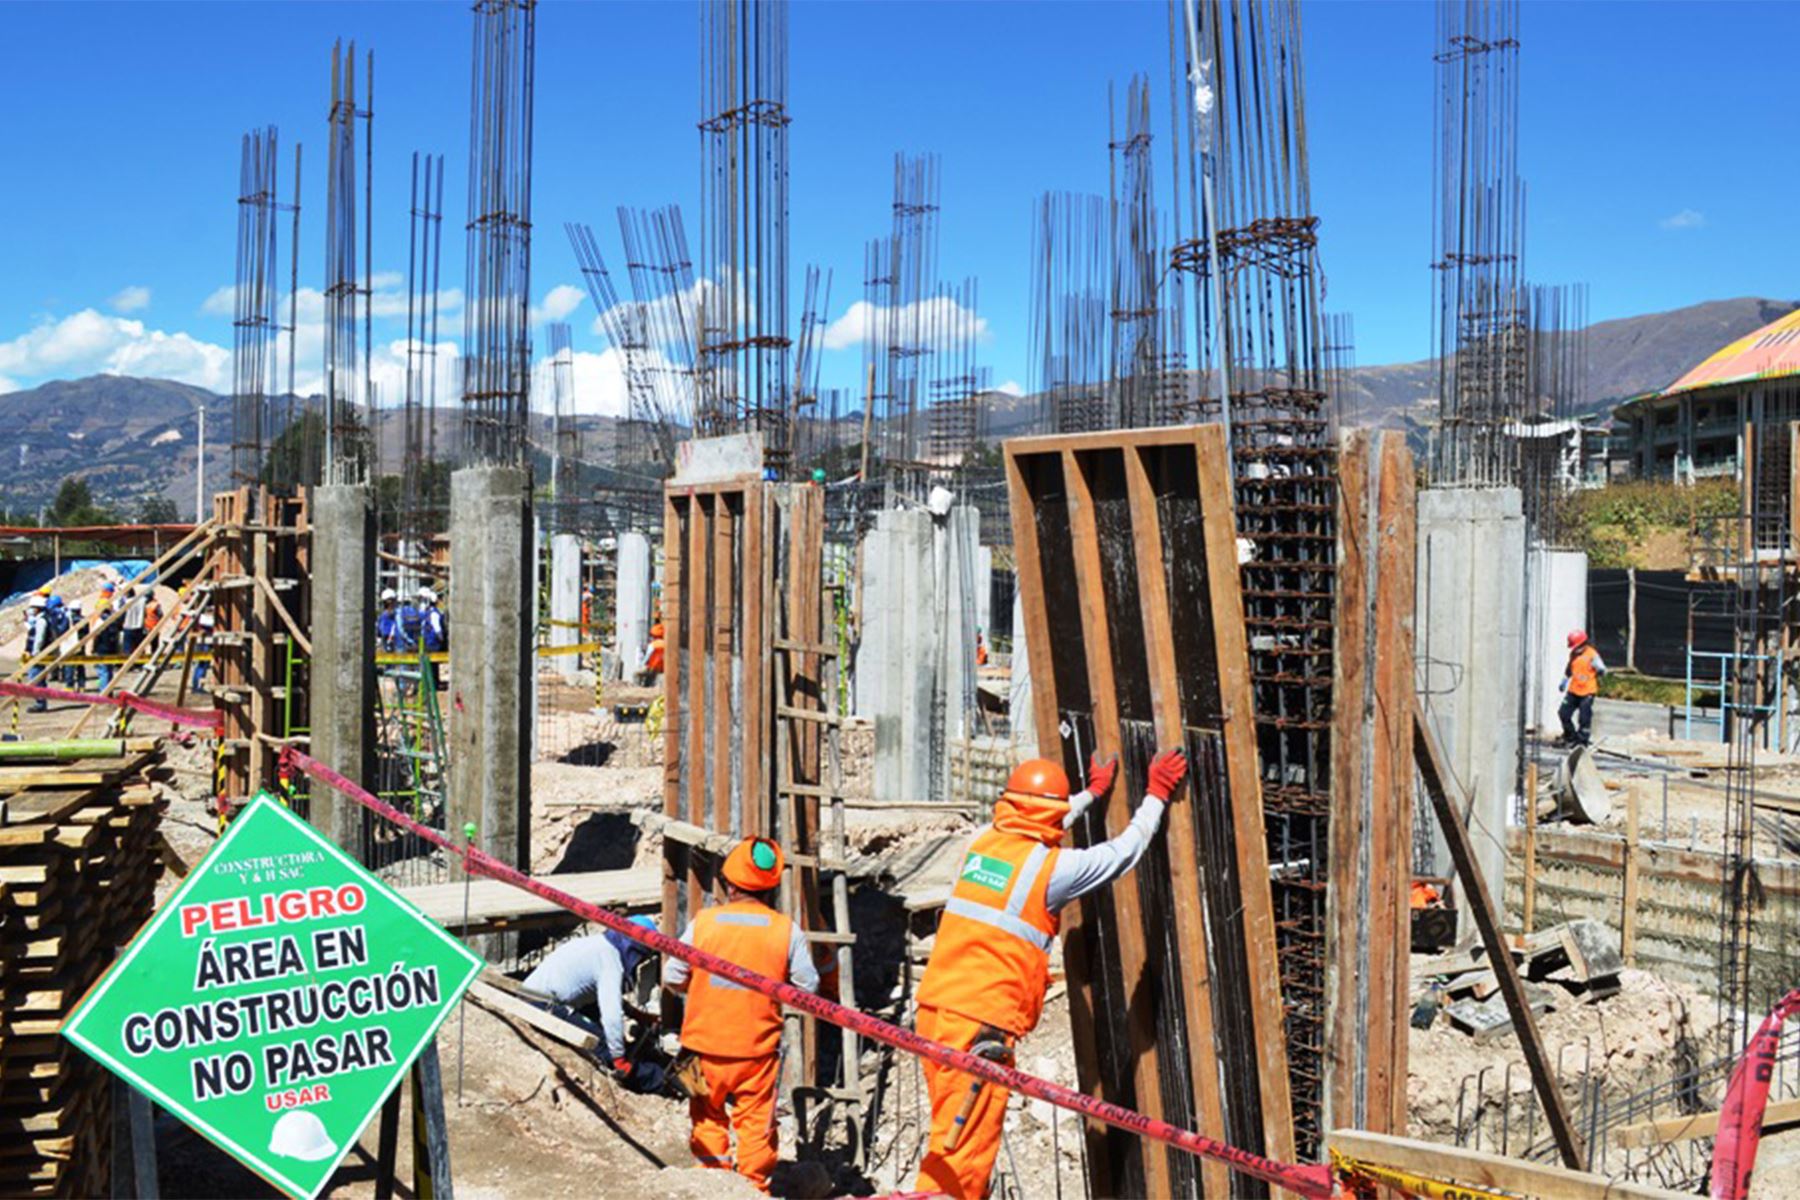 El sector construcción registró 3,768 puestos de trabajo en la región Cajamarca, informó la Dirección Regional de Trabajo y Promoción del Empleo. Foto: ANDINA/Cortesía Eduard Lozano